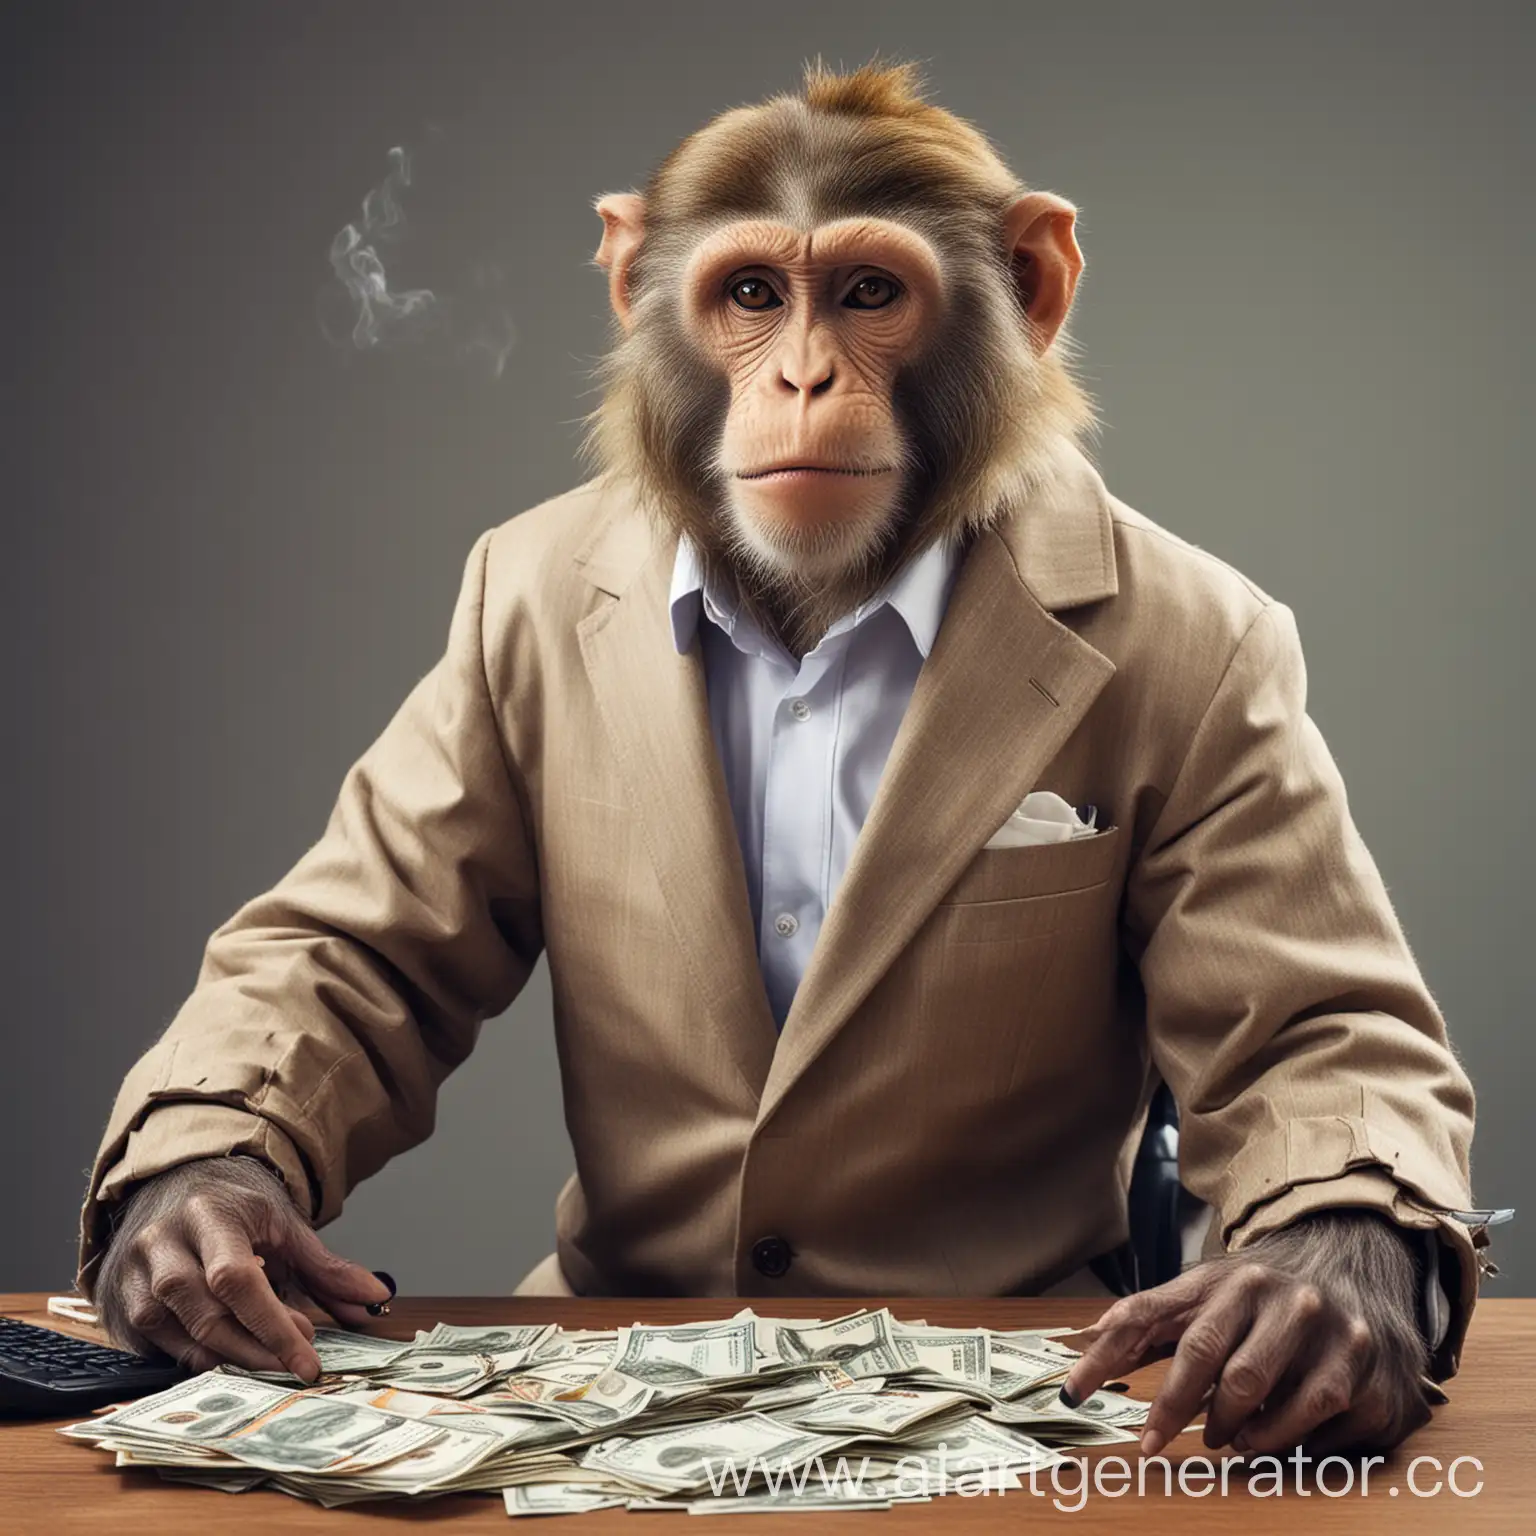 Обезьяна в пиджаке в финансовом офисе с сигаретой и с деньгами.